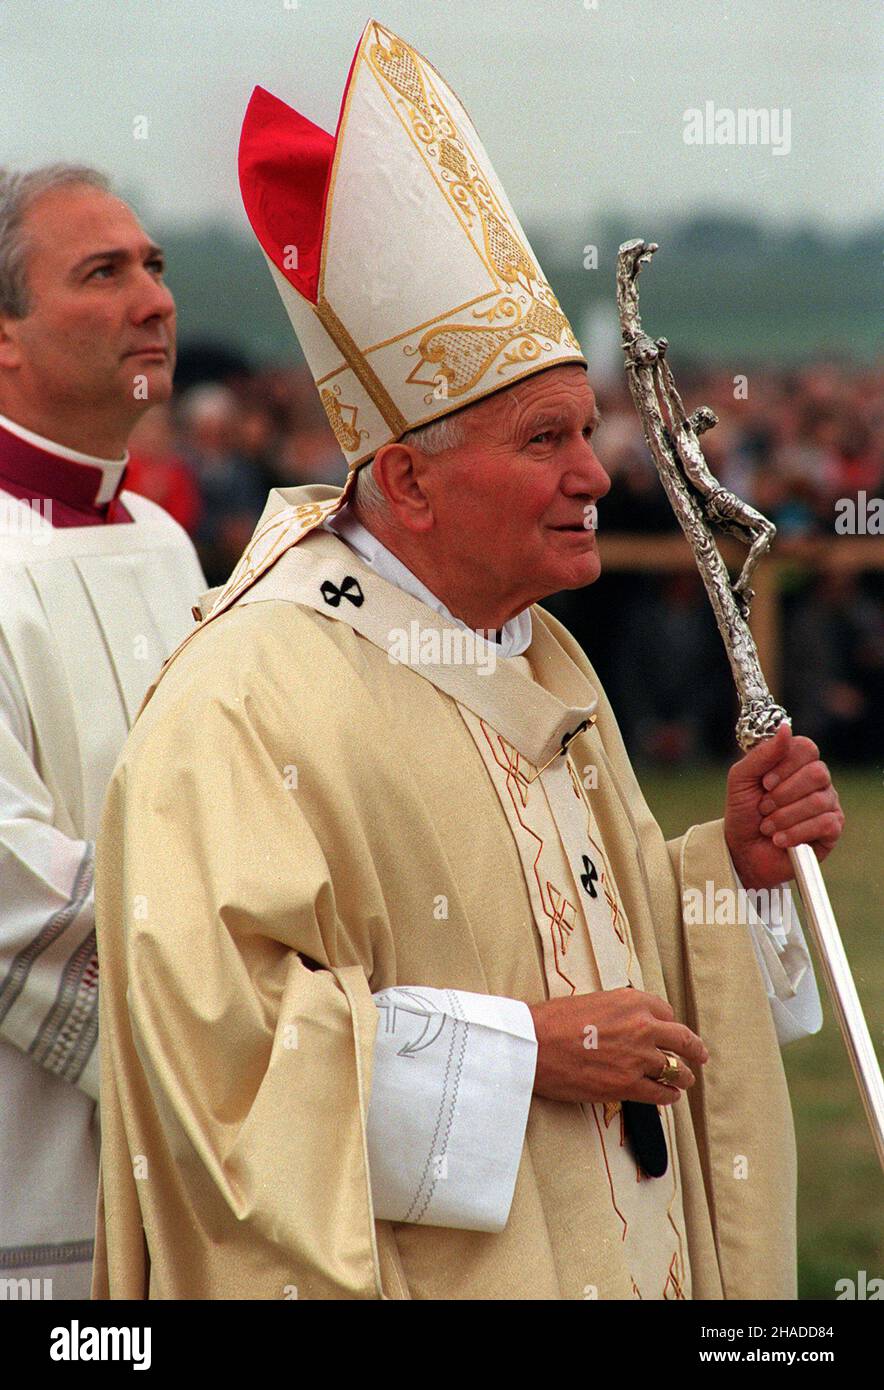 W³oc³awek, 07.06.1991. IV pielgrzymka papie¿a Jana Paw³a II do Polski. Nz. papie¿ we W³oc³awku. (kru) PAP/Janusz Mazur     Wloclawek,  07.06.1991. IV pilgrimage of John Paul II to Poland. Pictured: pope visited Lubaczow in northern Poland. (kru) PAP/Janusz Mazur Stock Photo